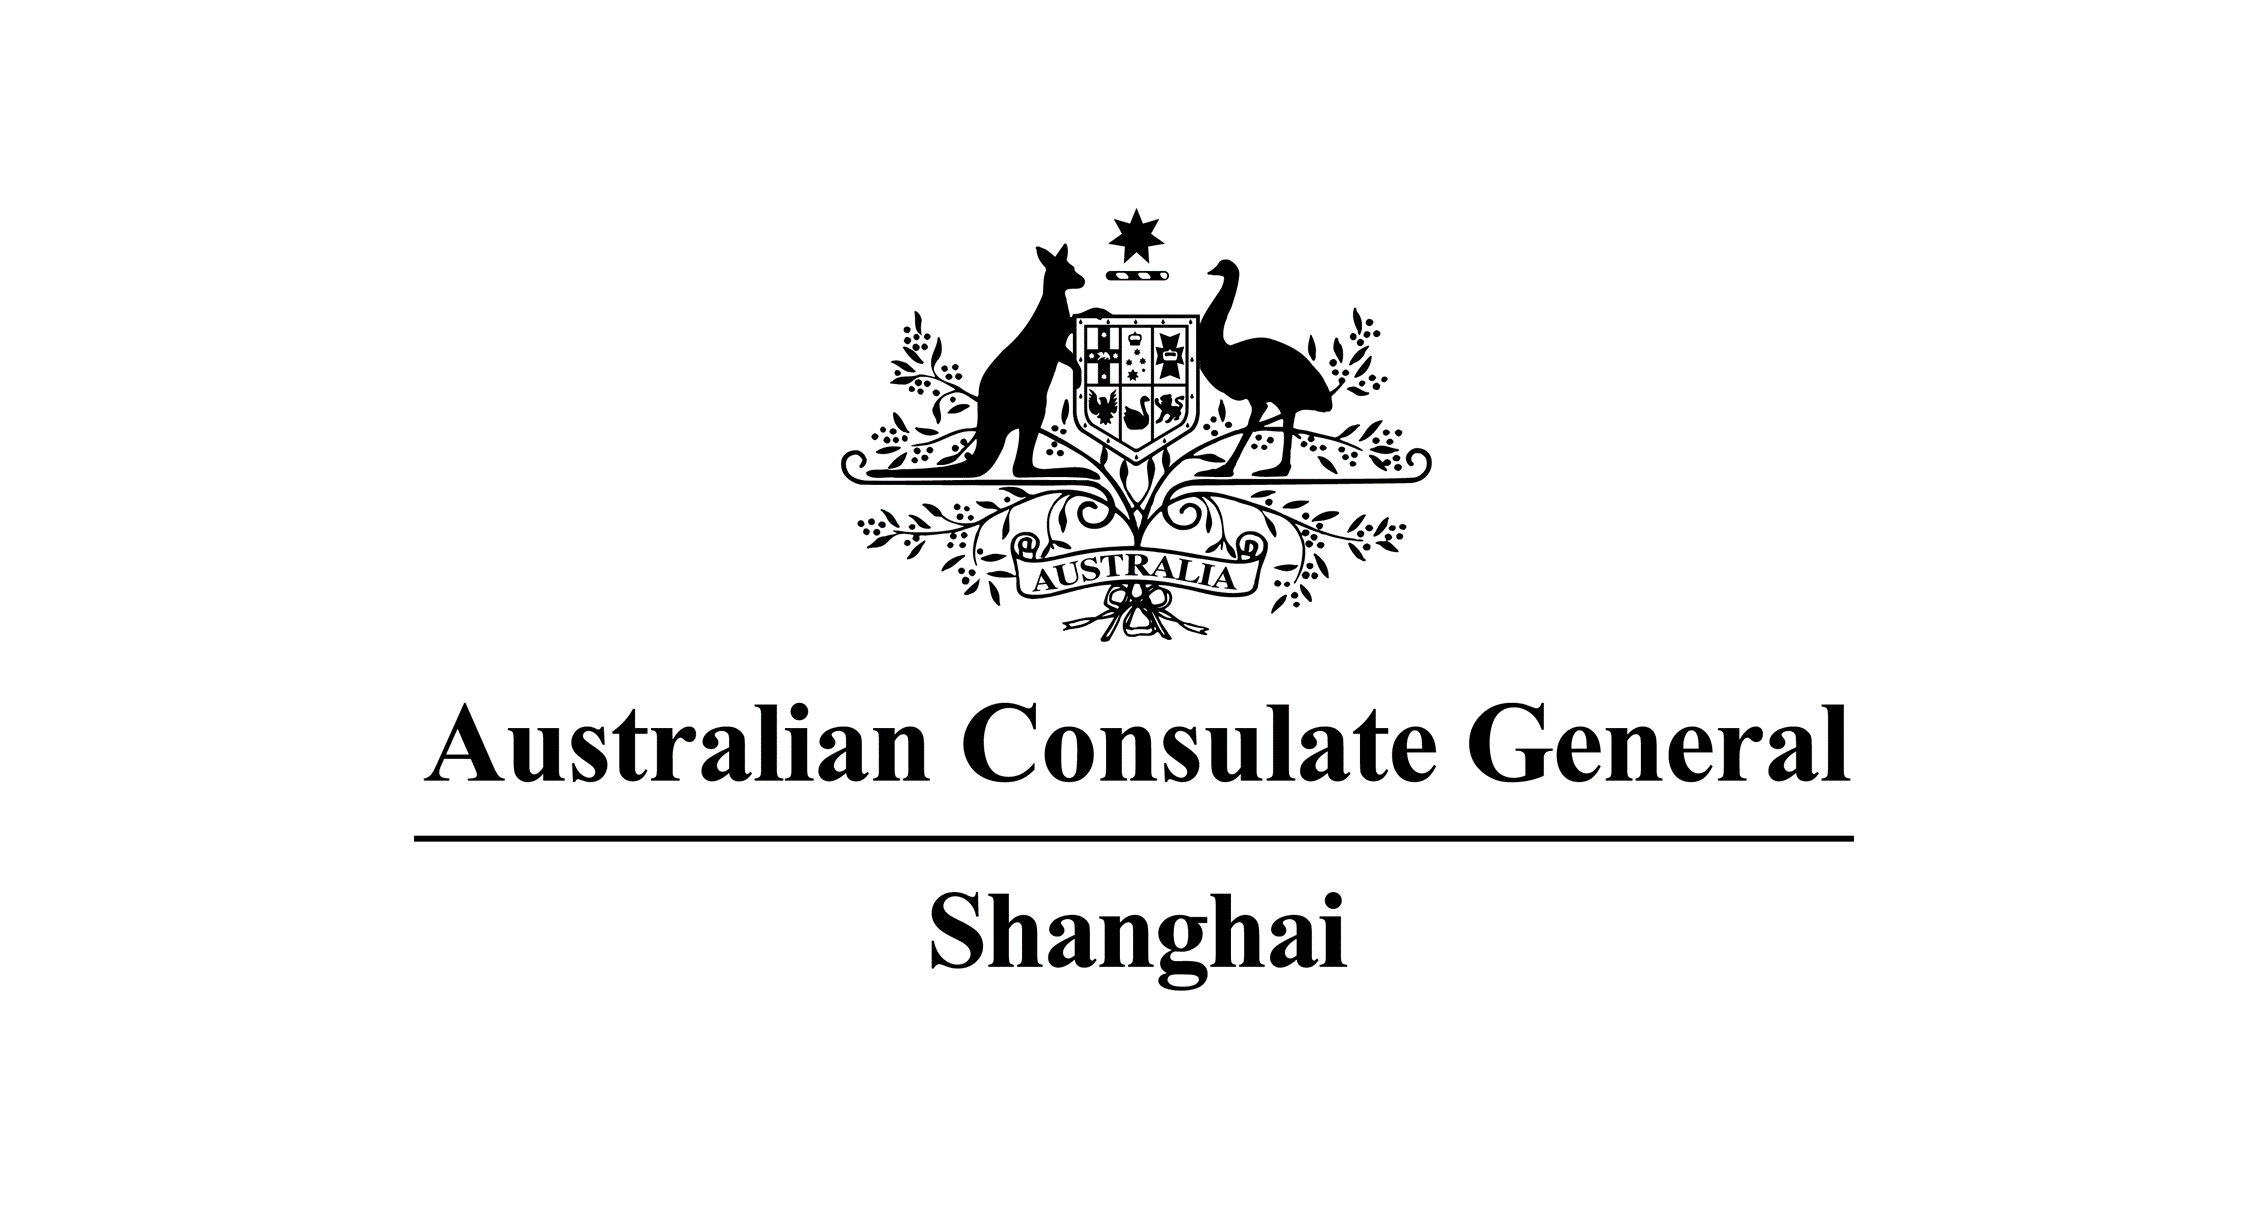 澳大利亚驻上海总领事馆 Australian Consulate